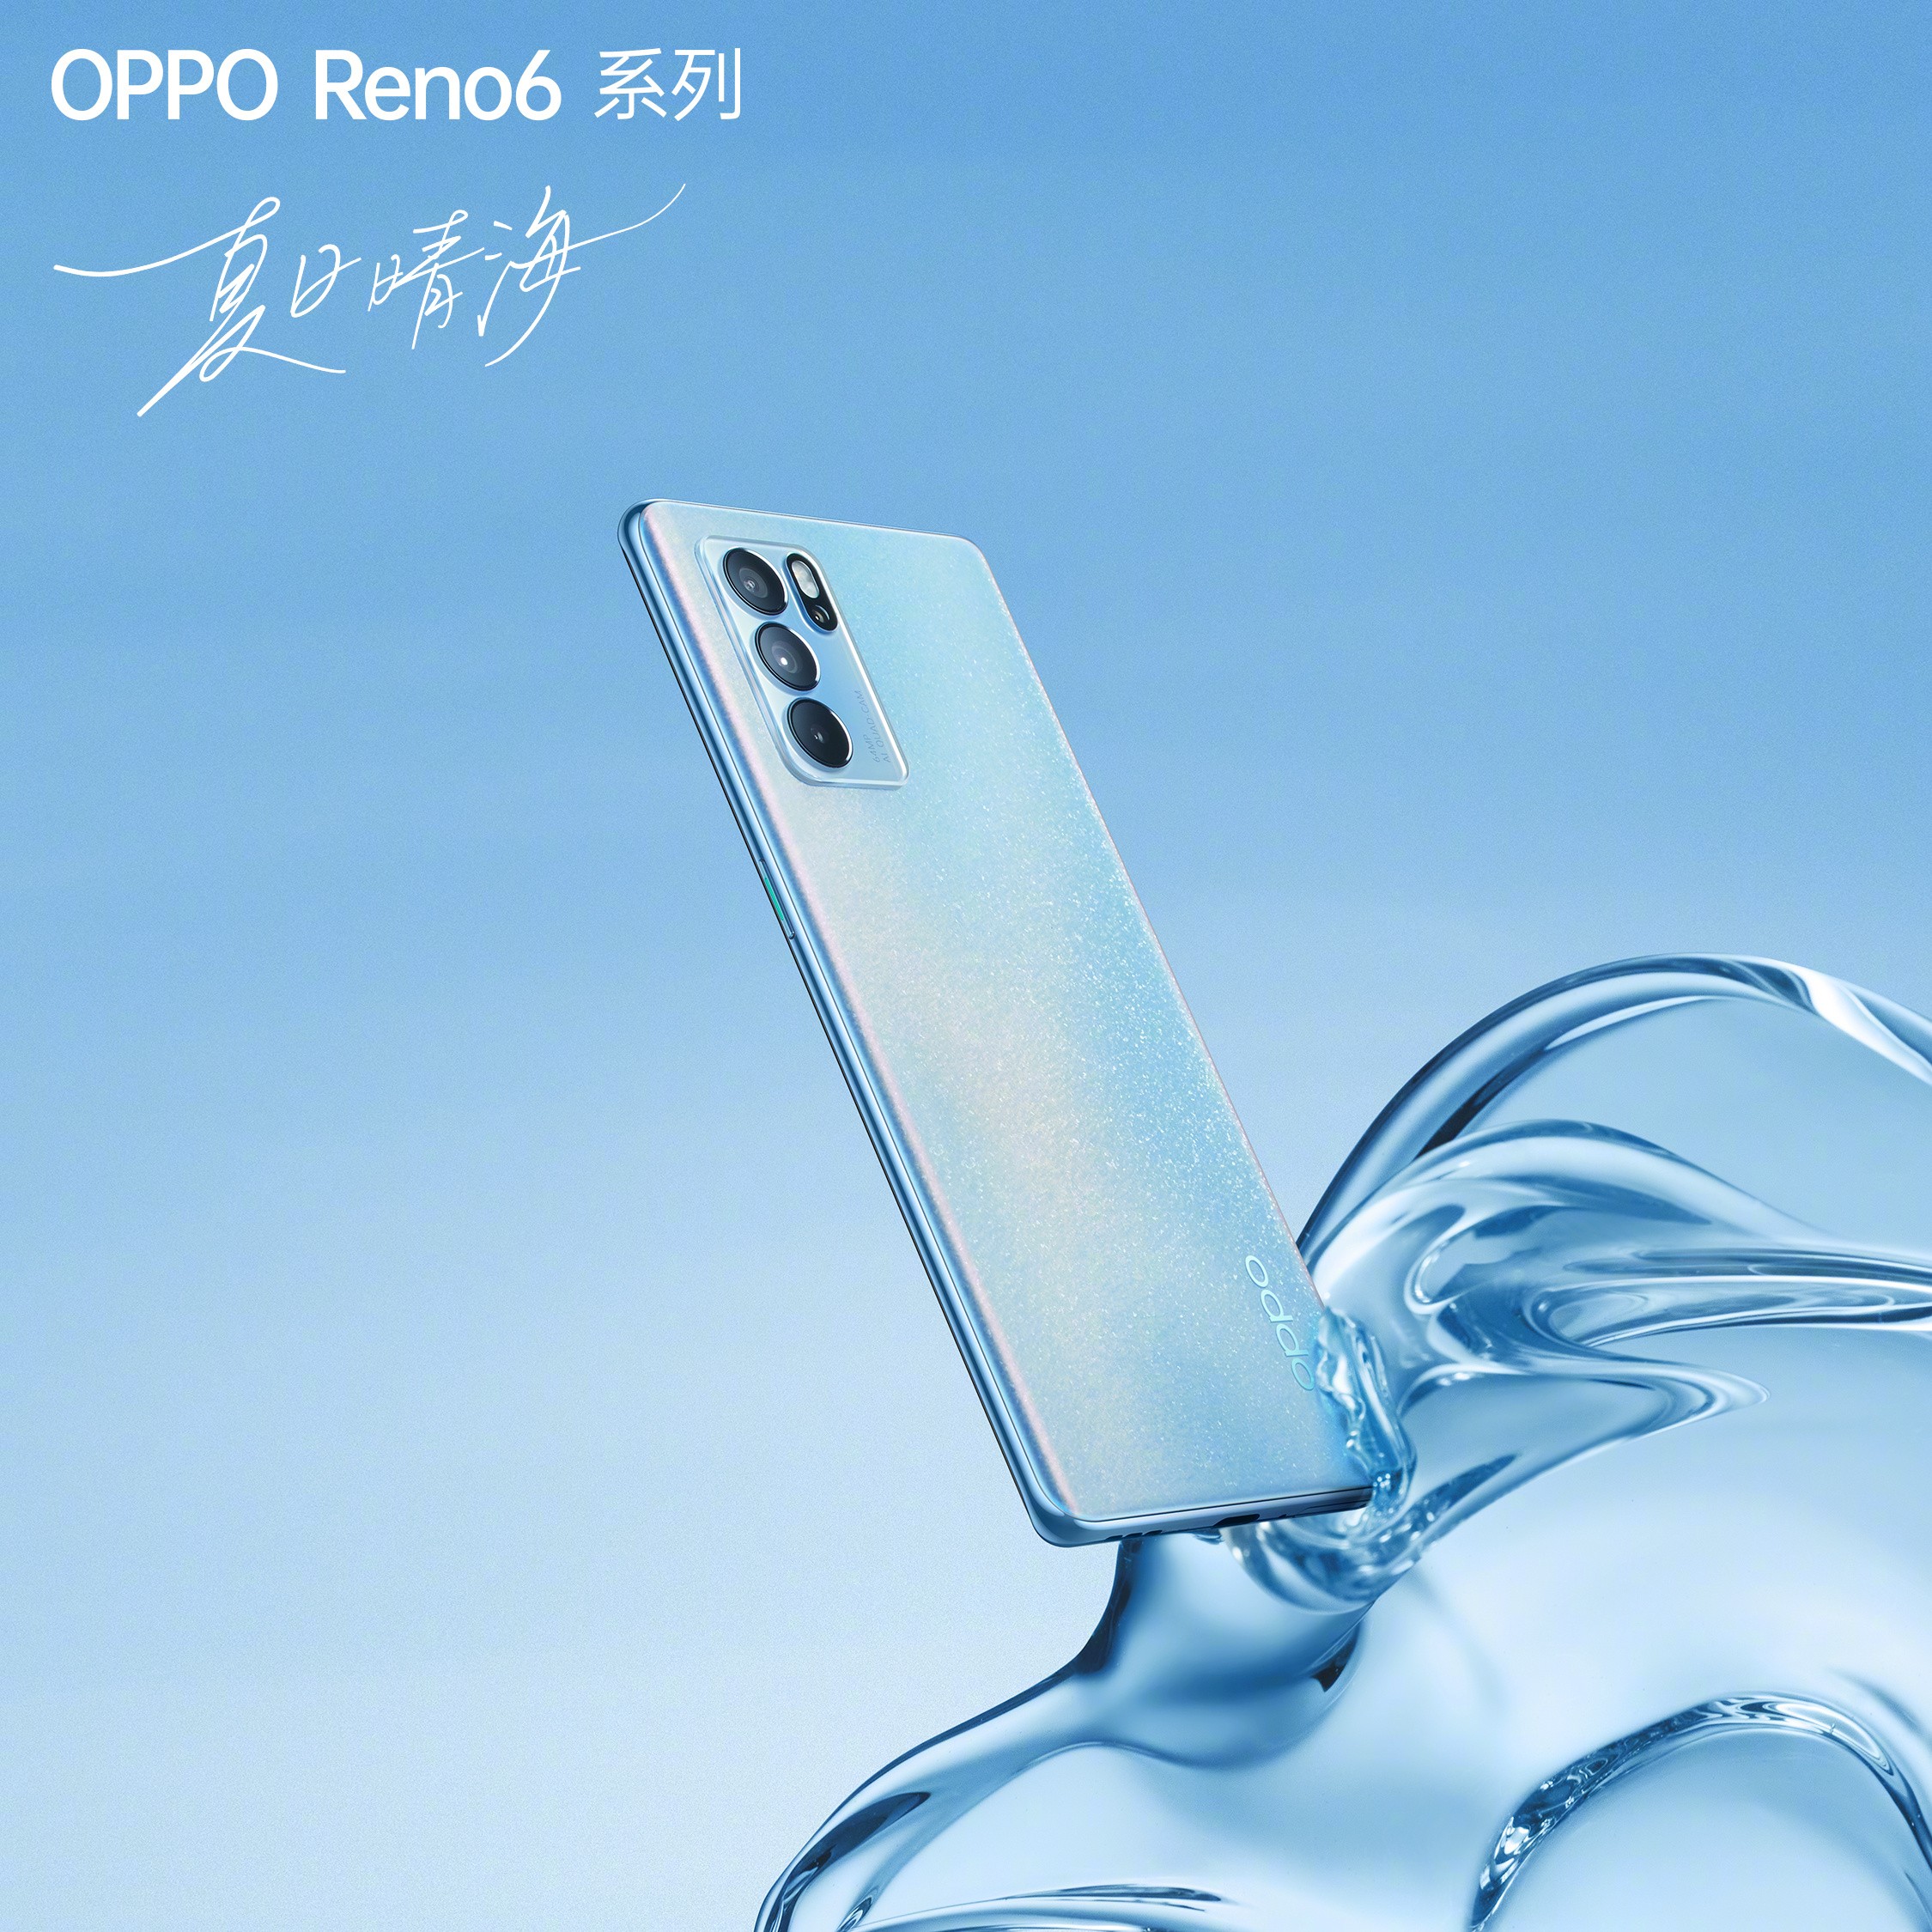 更美、更薄、更好玩，OPPO Reno6系列将于6月5日正式开售